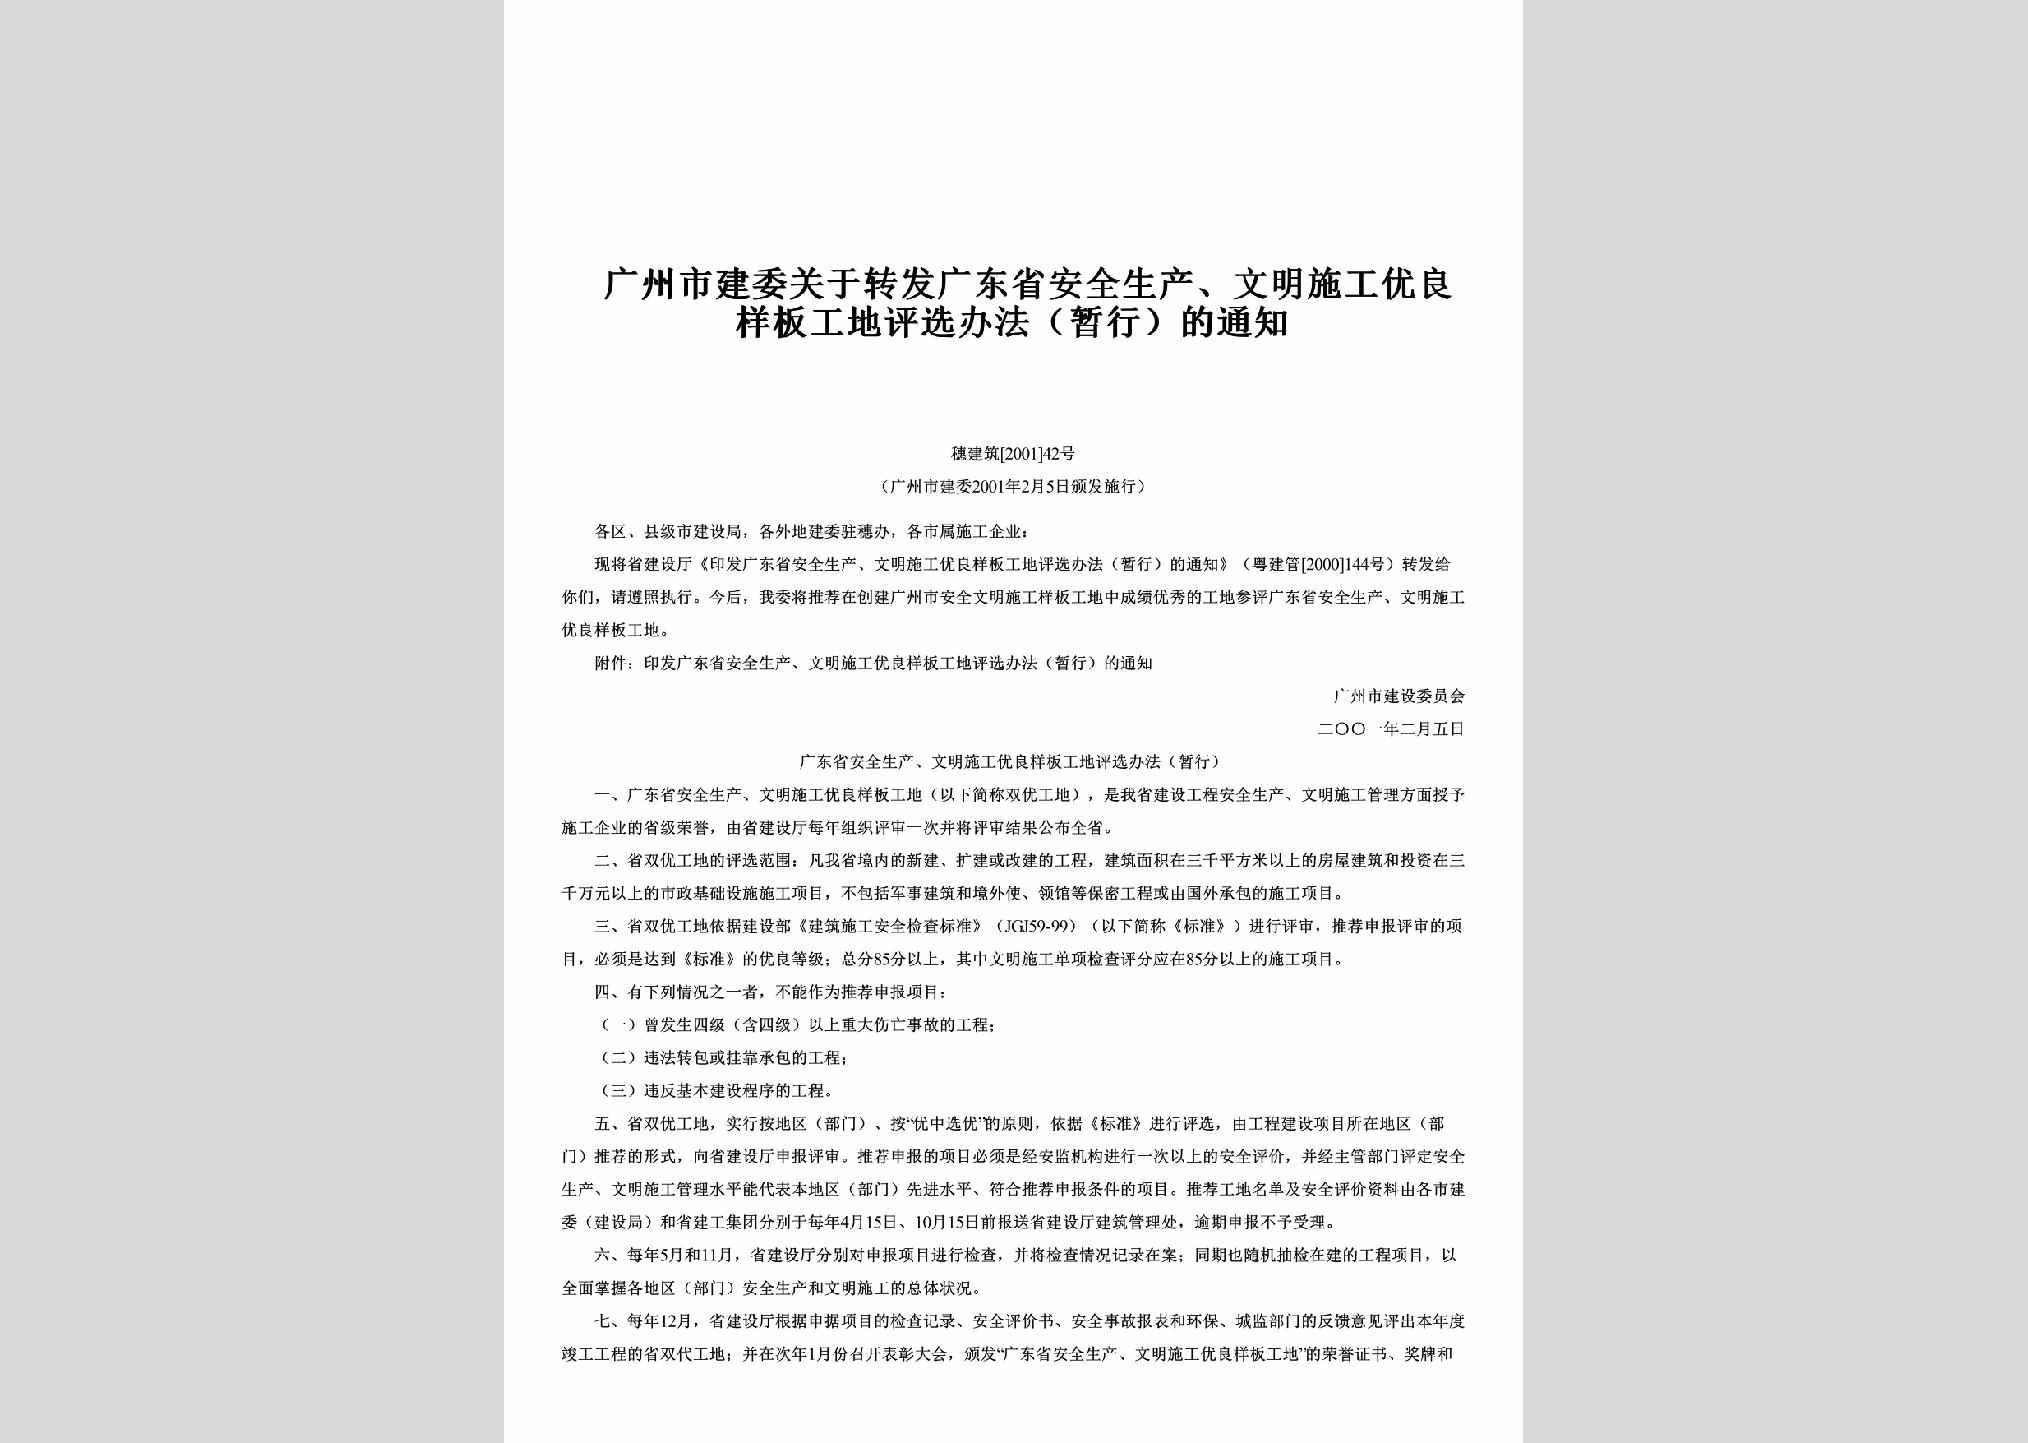 穗建筑[2001]42号：关于转发广东省安全生产、文明施工优良样板工地评选办法（暂行）的通知